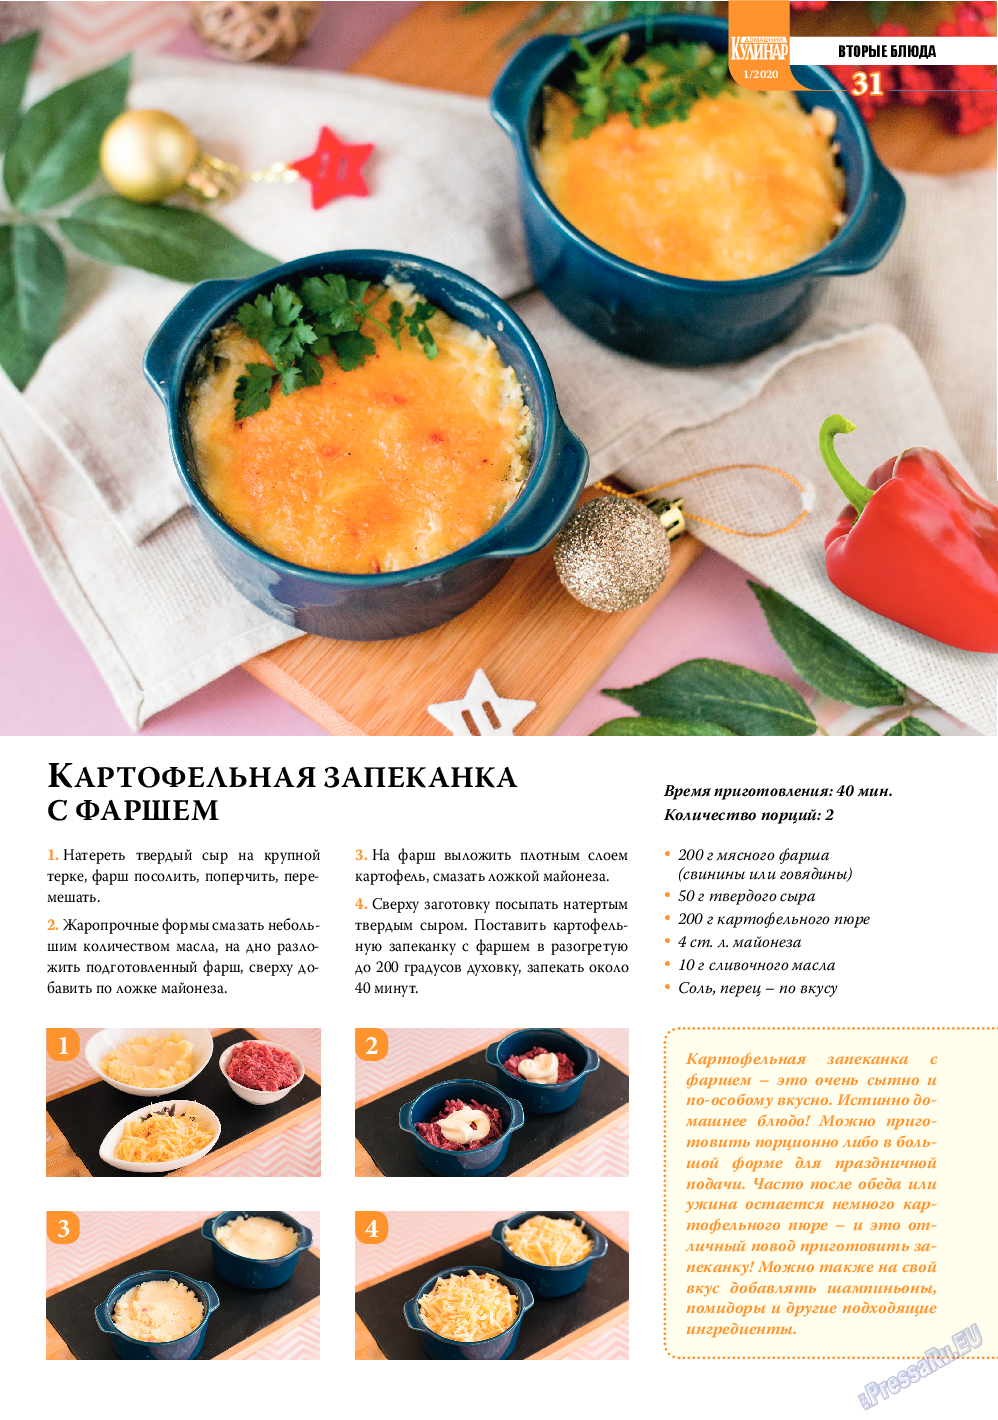 Домашний кулинар, журнал. 2020 №1 стр.31